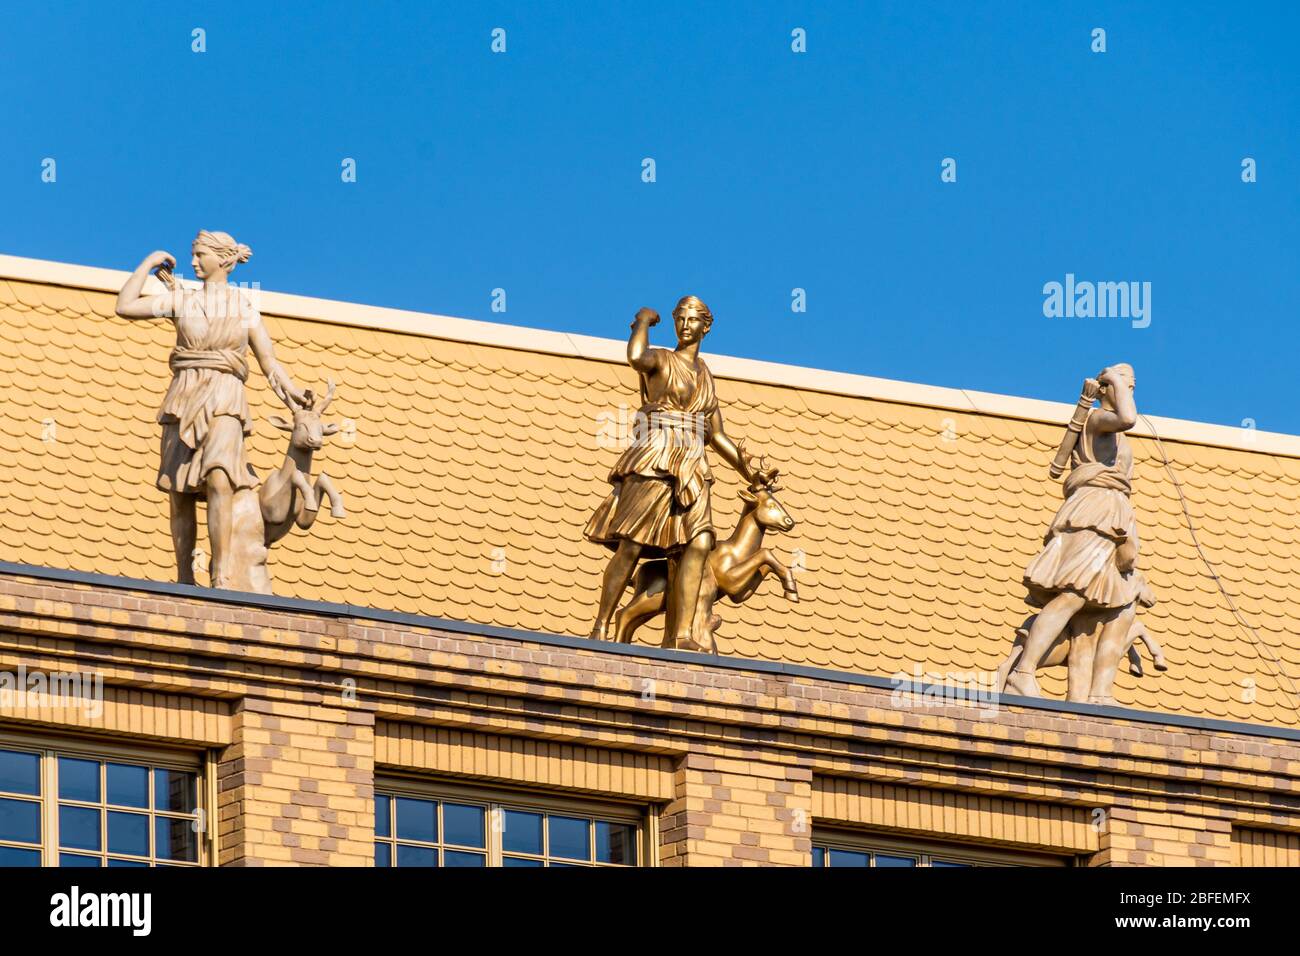 Statua dorata di Diana oltre a statue di marmo sulla parte superiore della facciata in mattoni gialli con motivi Foto Stock